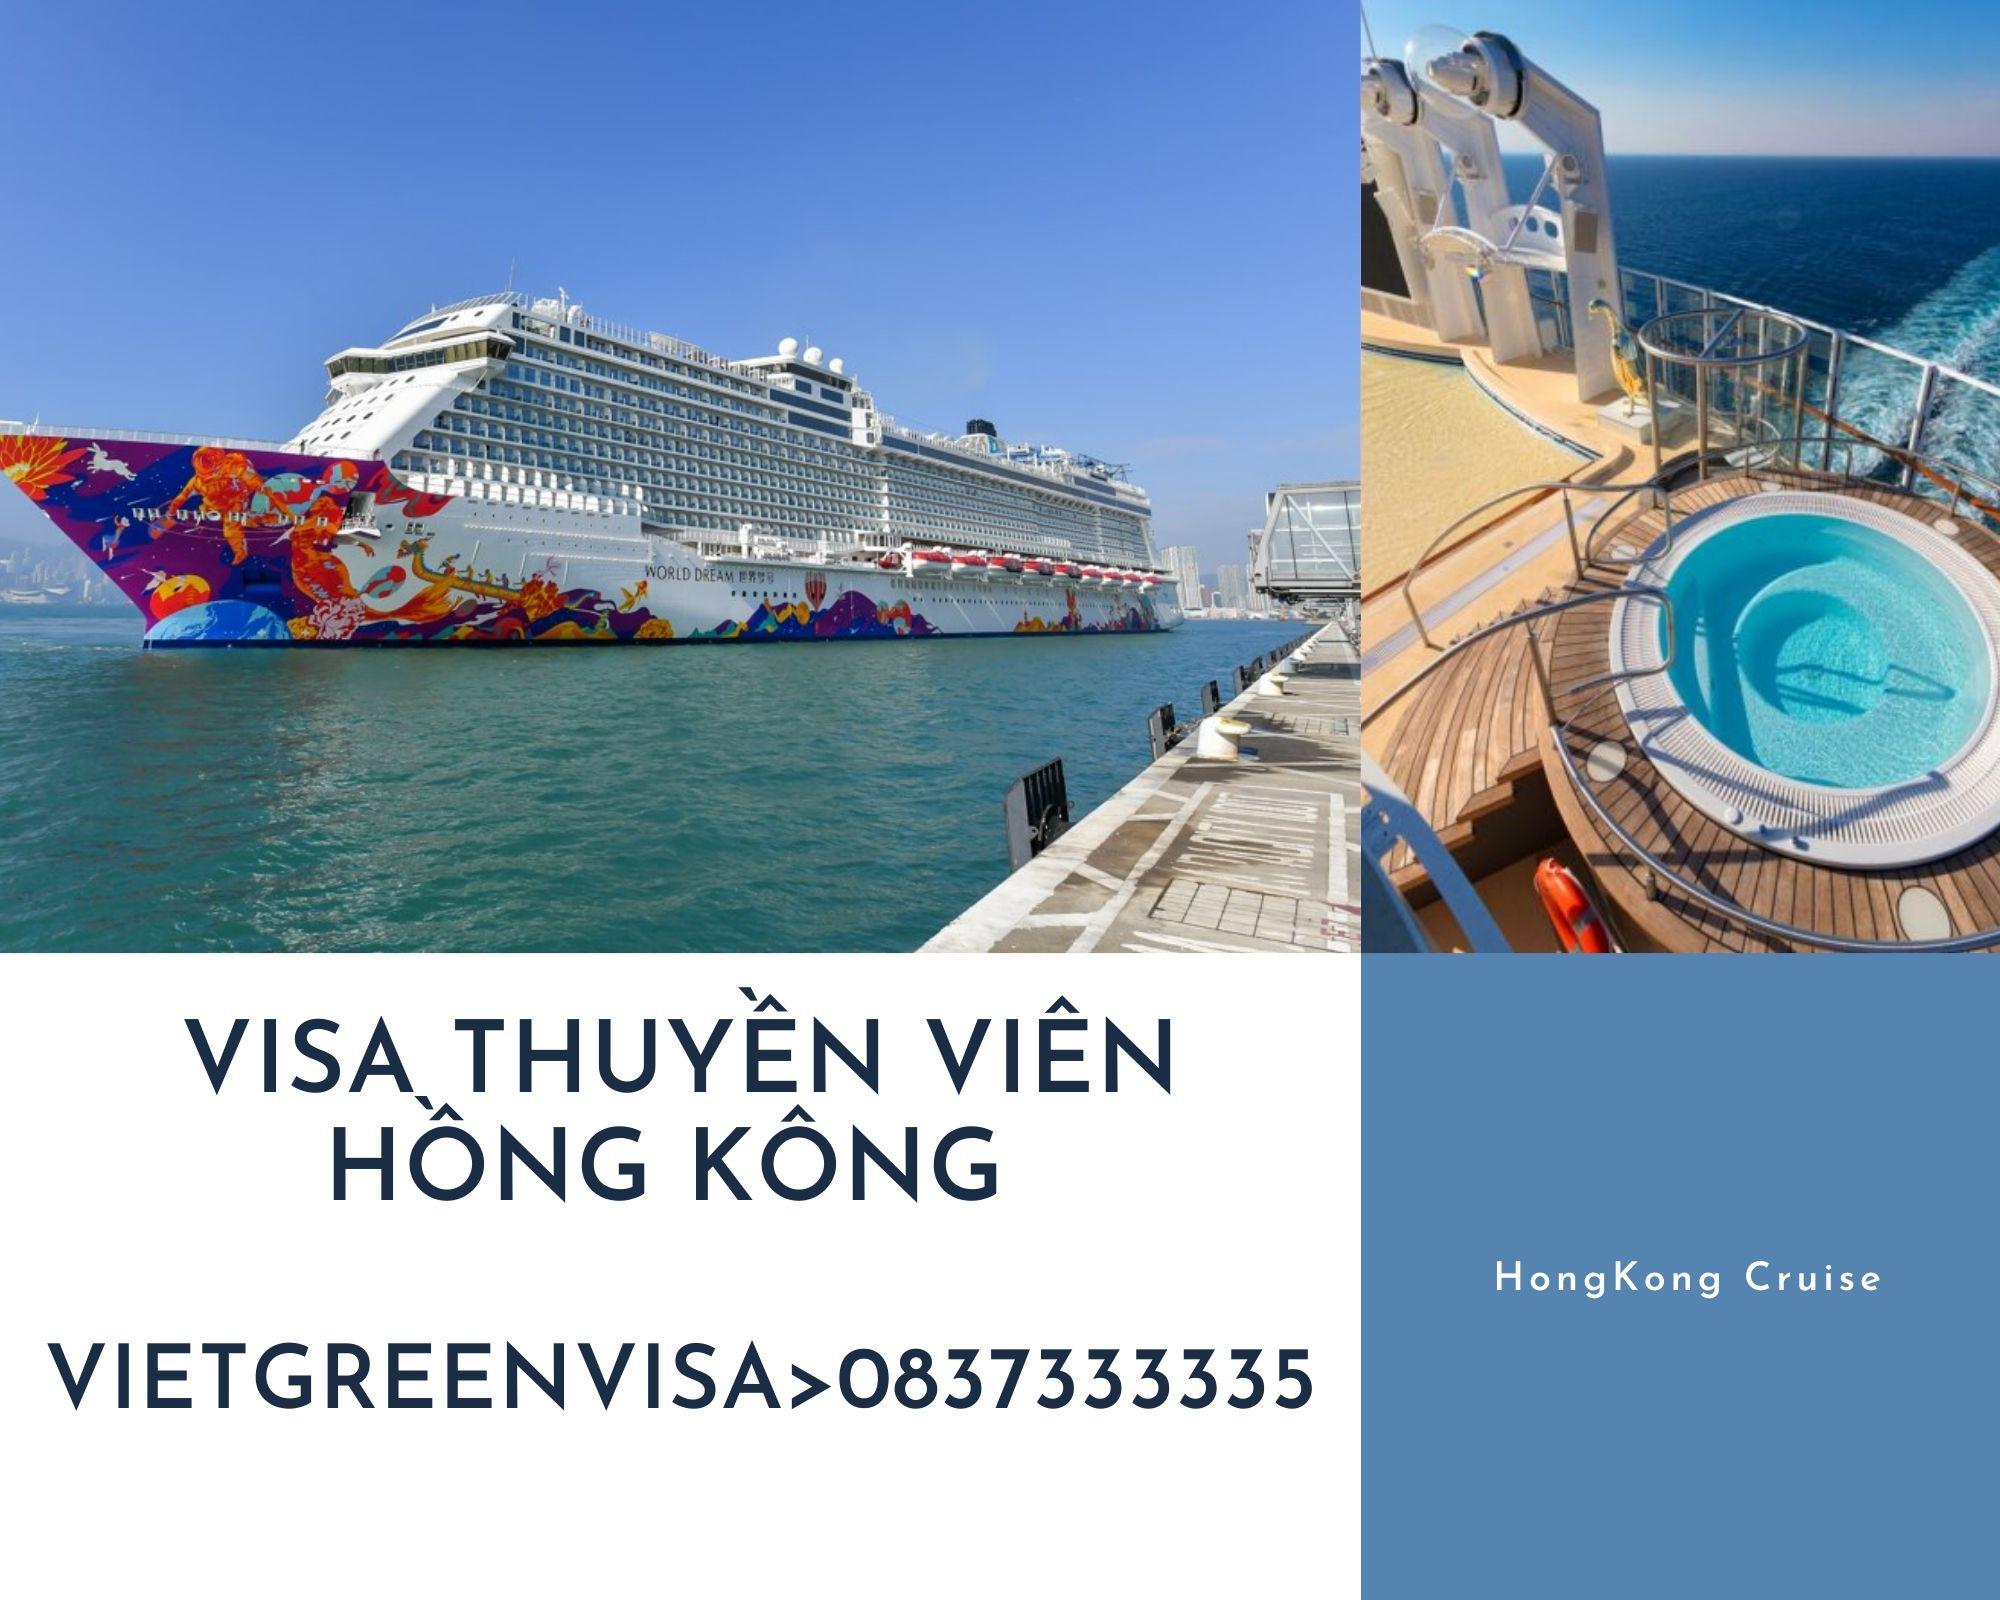 Visa thuyền viên Hồng Kông, Dịch vụ xin visa Hồng Kông thuyền viên uy tín, Thủ tục visa Hồng Kông thuyền viên trọn gói